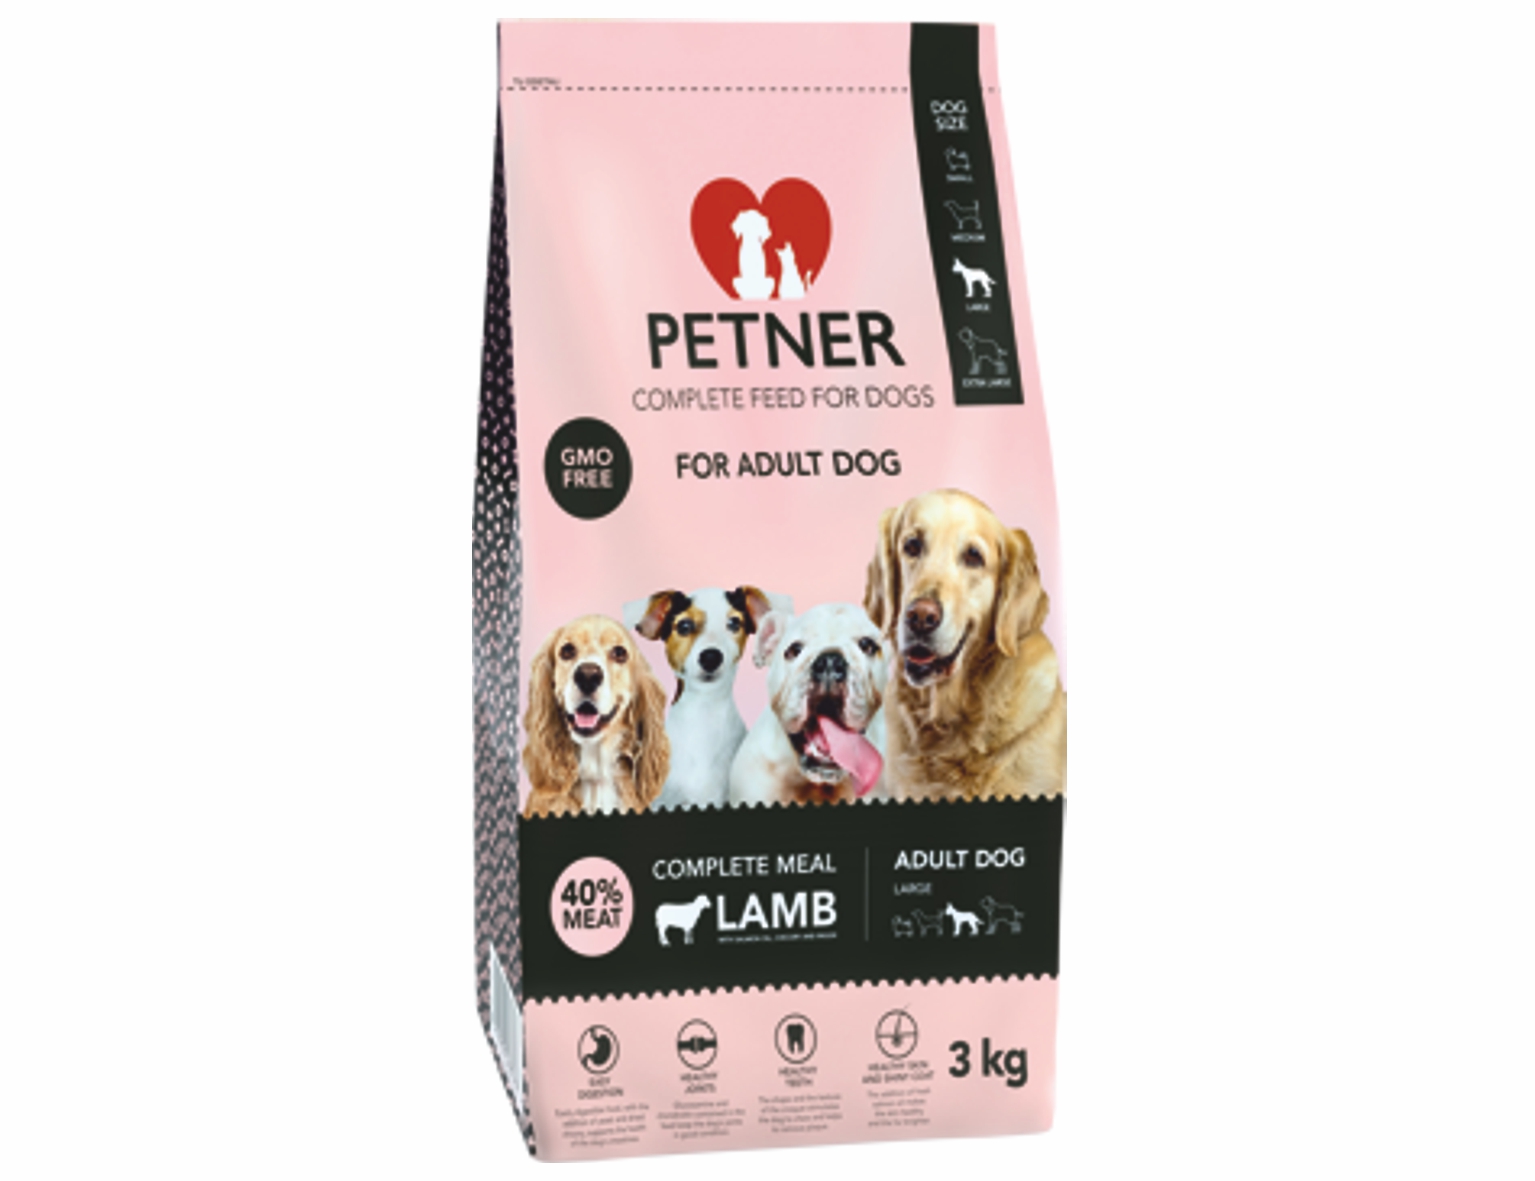 PETNER Adult prémiové krmivo pre psov veľkých plemien jahňa 3kg 40% mäsa